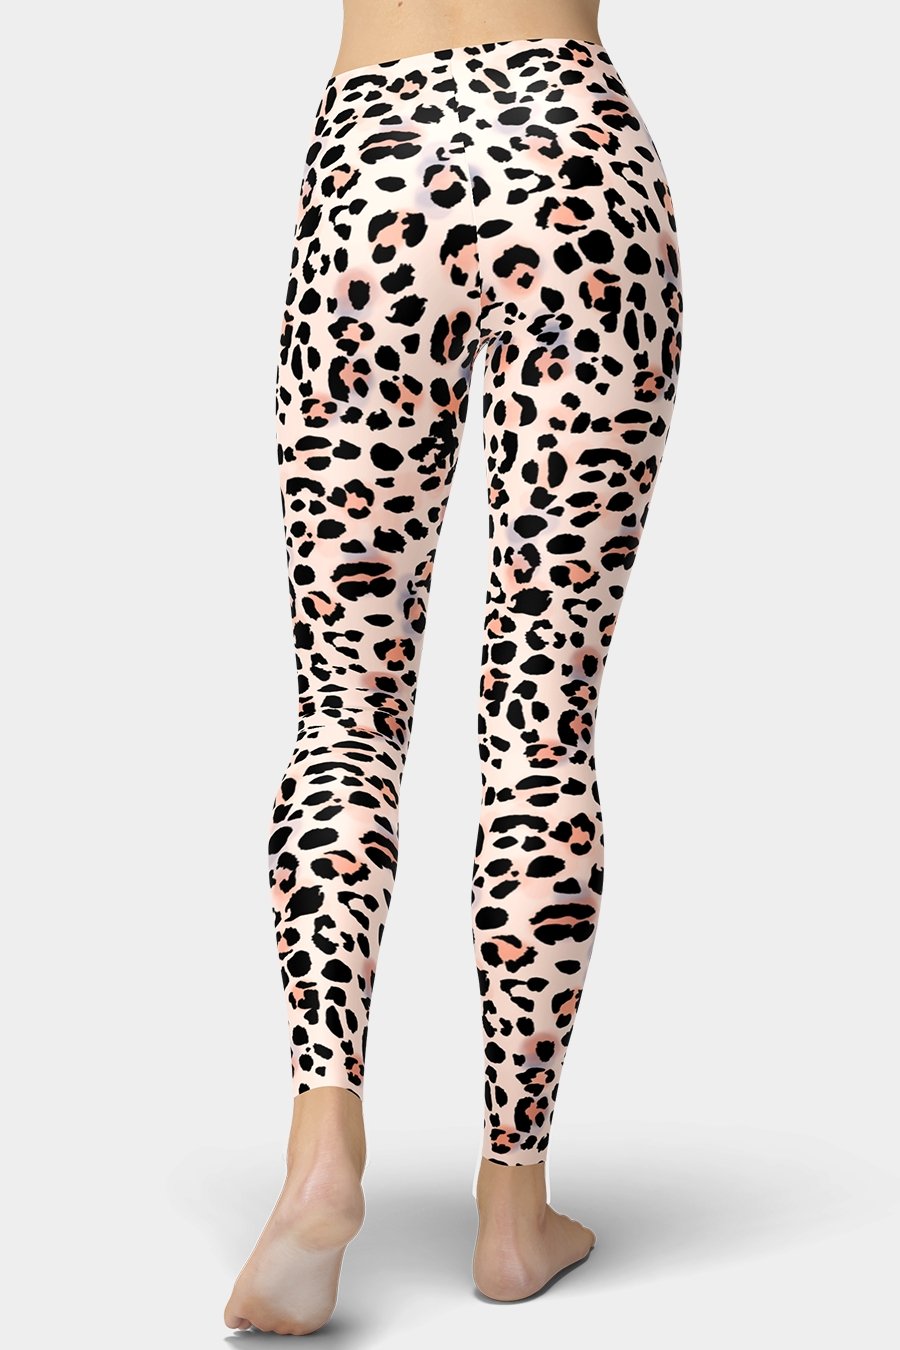 Leopard Print Leggings - SeeMyLeggings